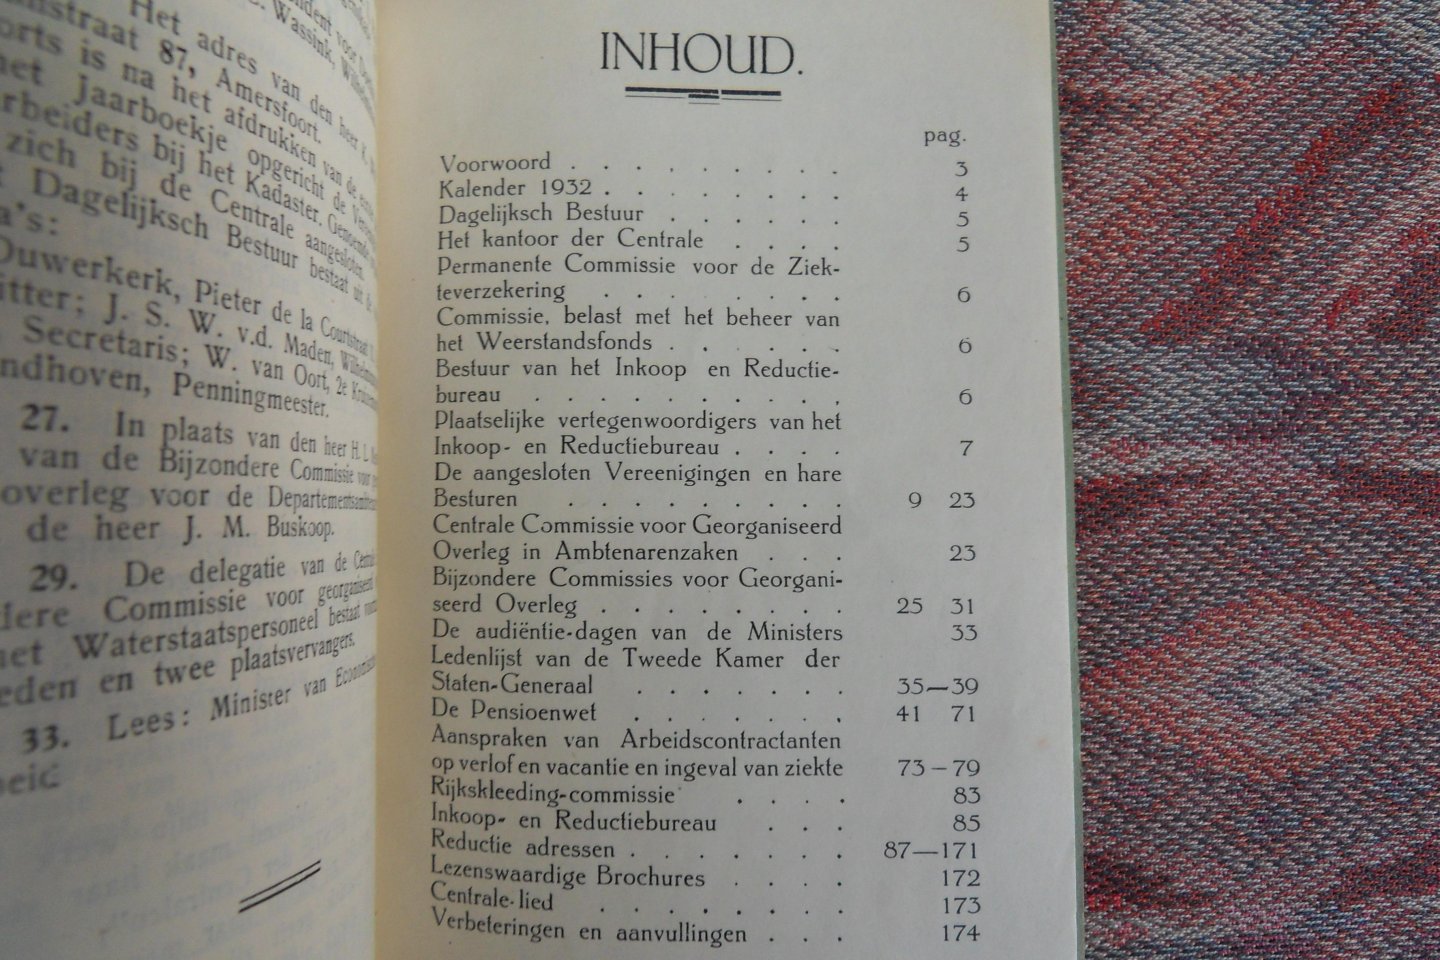 Perdok, F. (voorwoord van de voorzitter). - Jaarboekje van de Centrale van Vereenigingen van Personeel in `s Rijks dienst 1932.